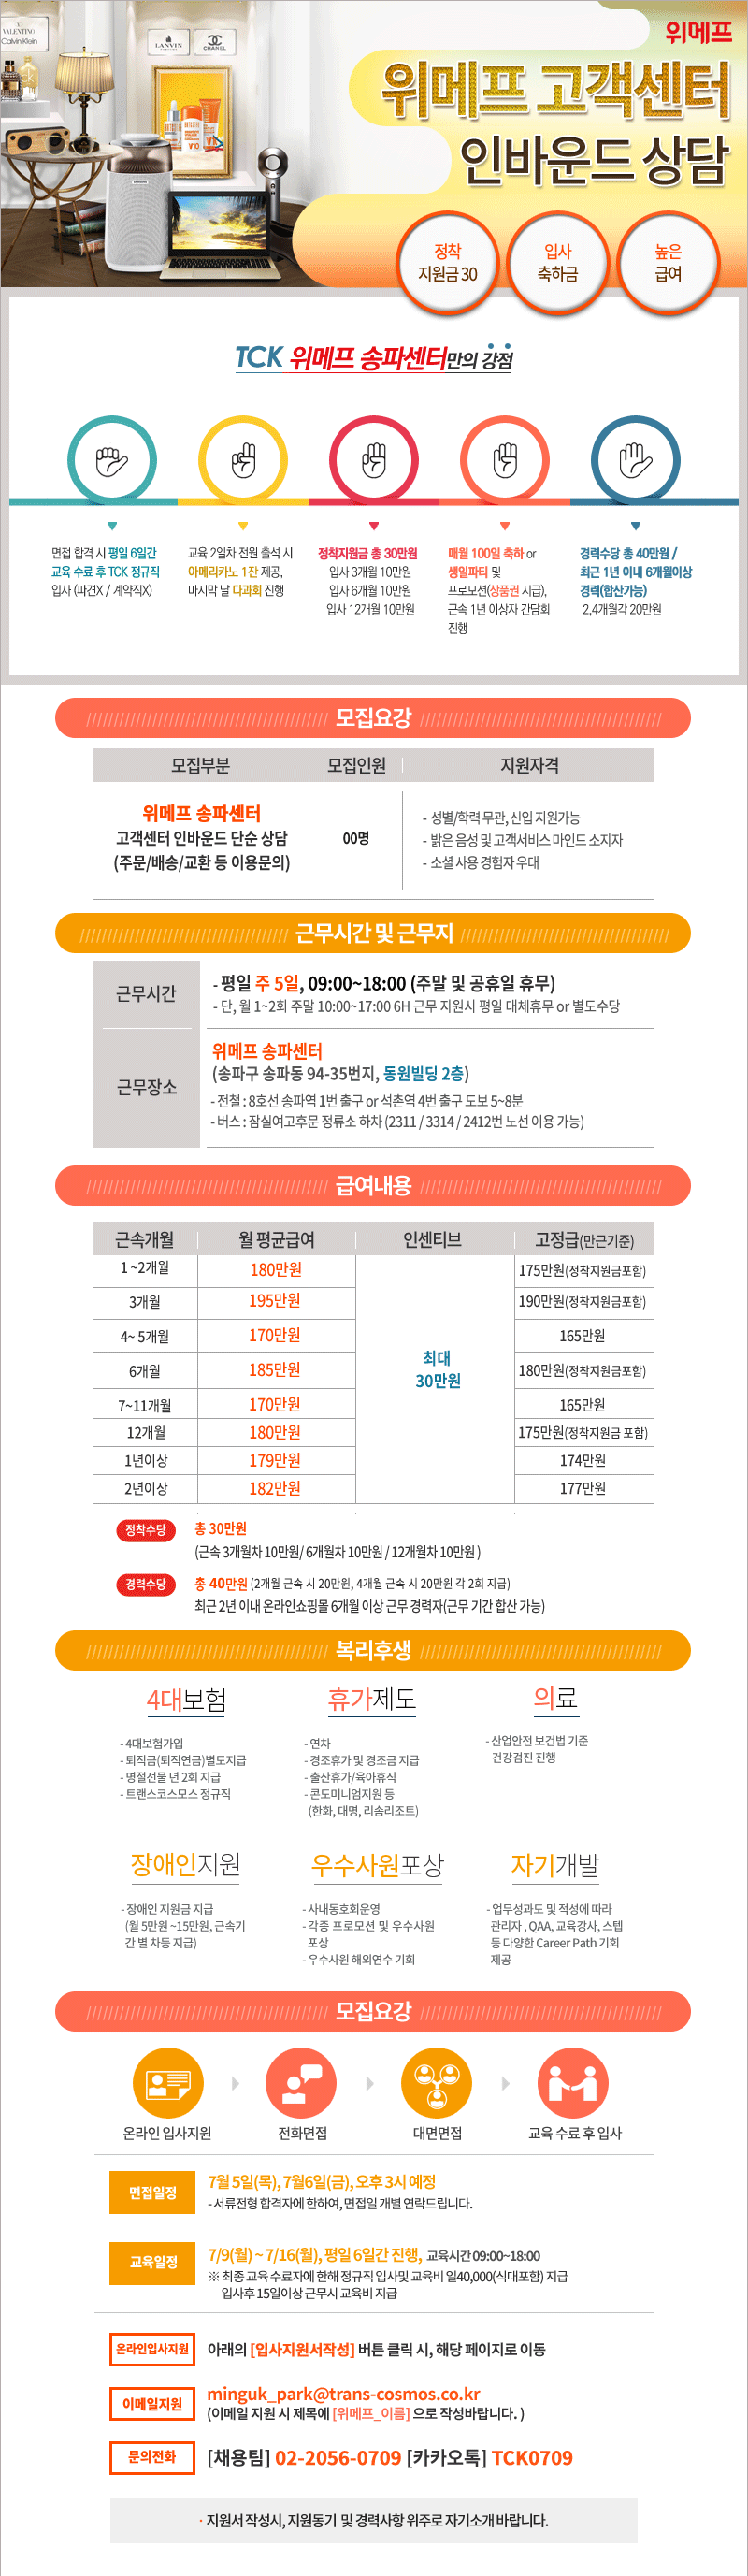 [월최대200만이상] 위메프 고객센터 주문/배송 인바운드(송파)